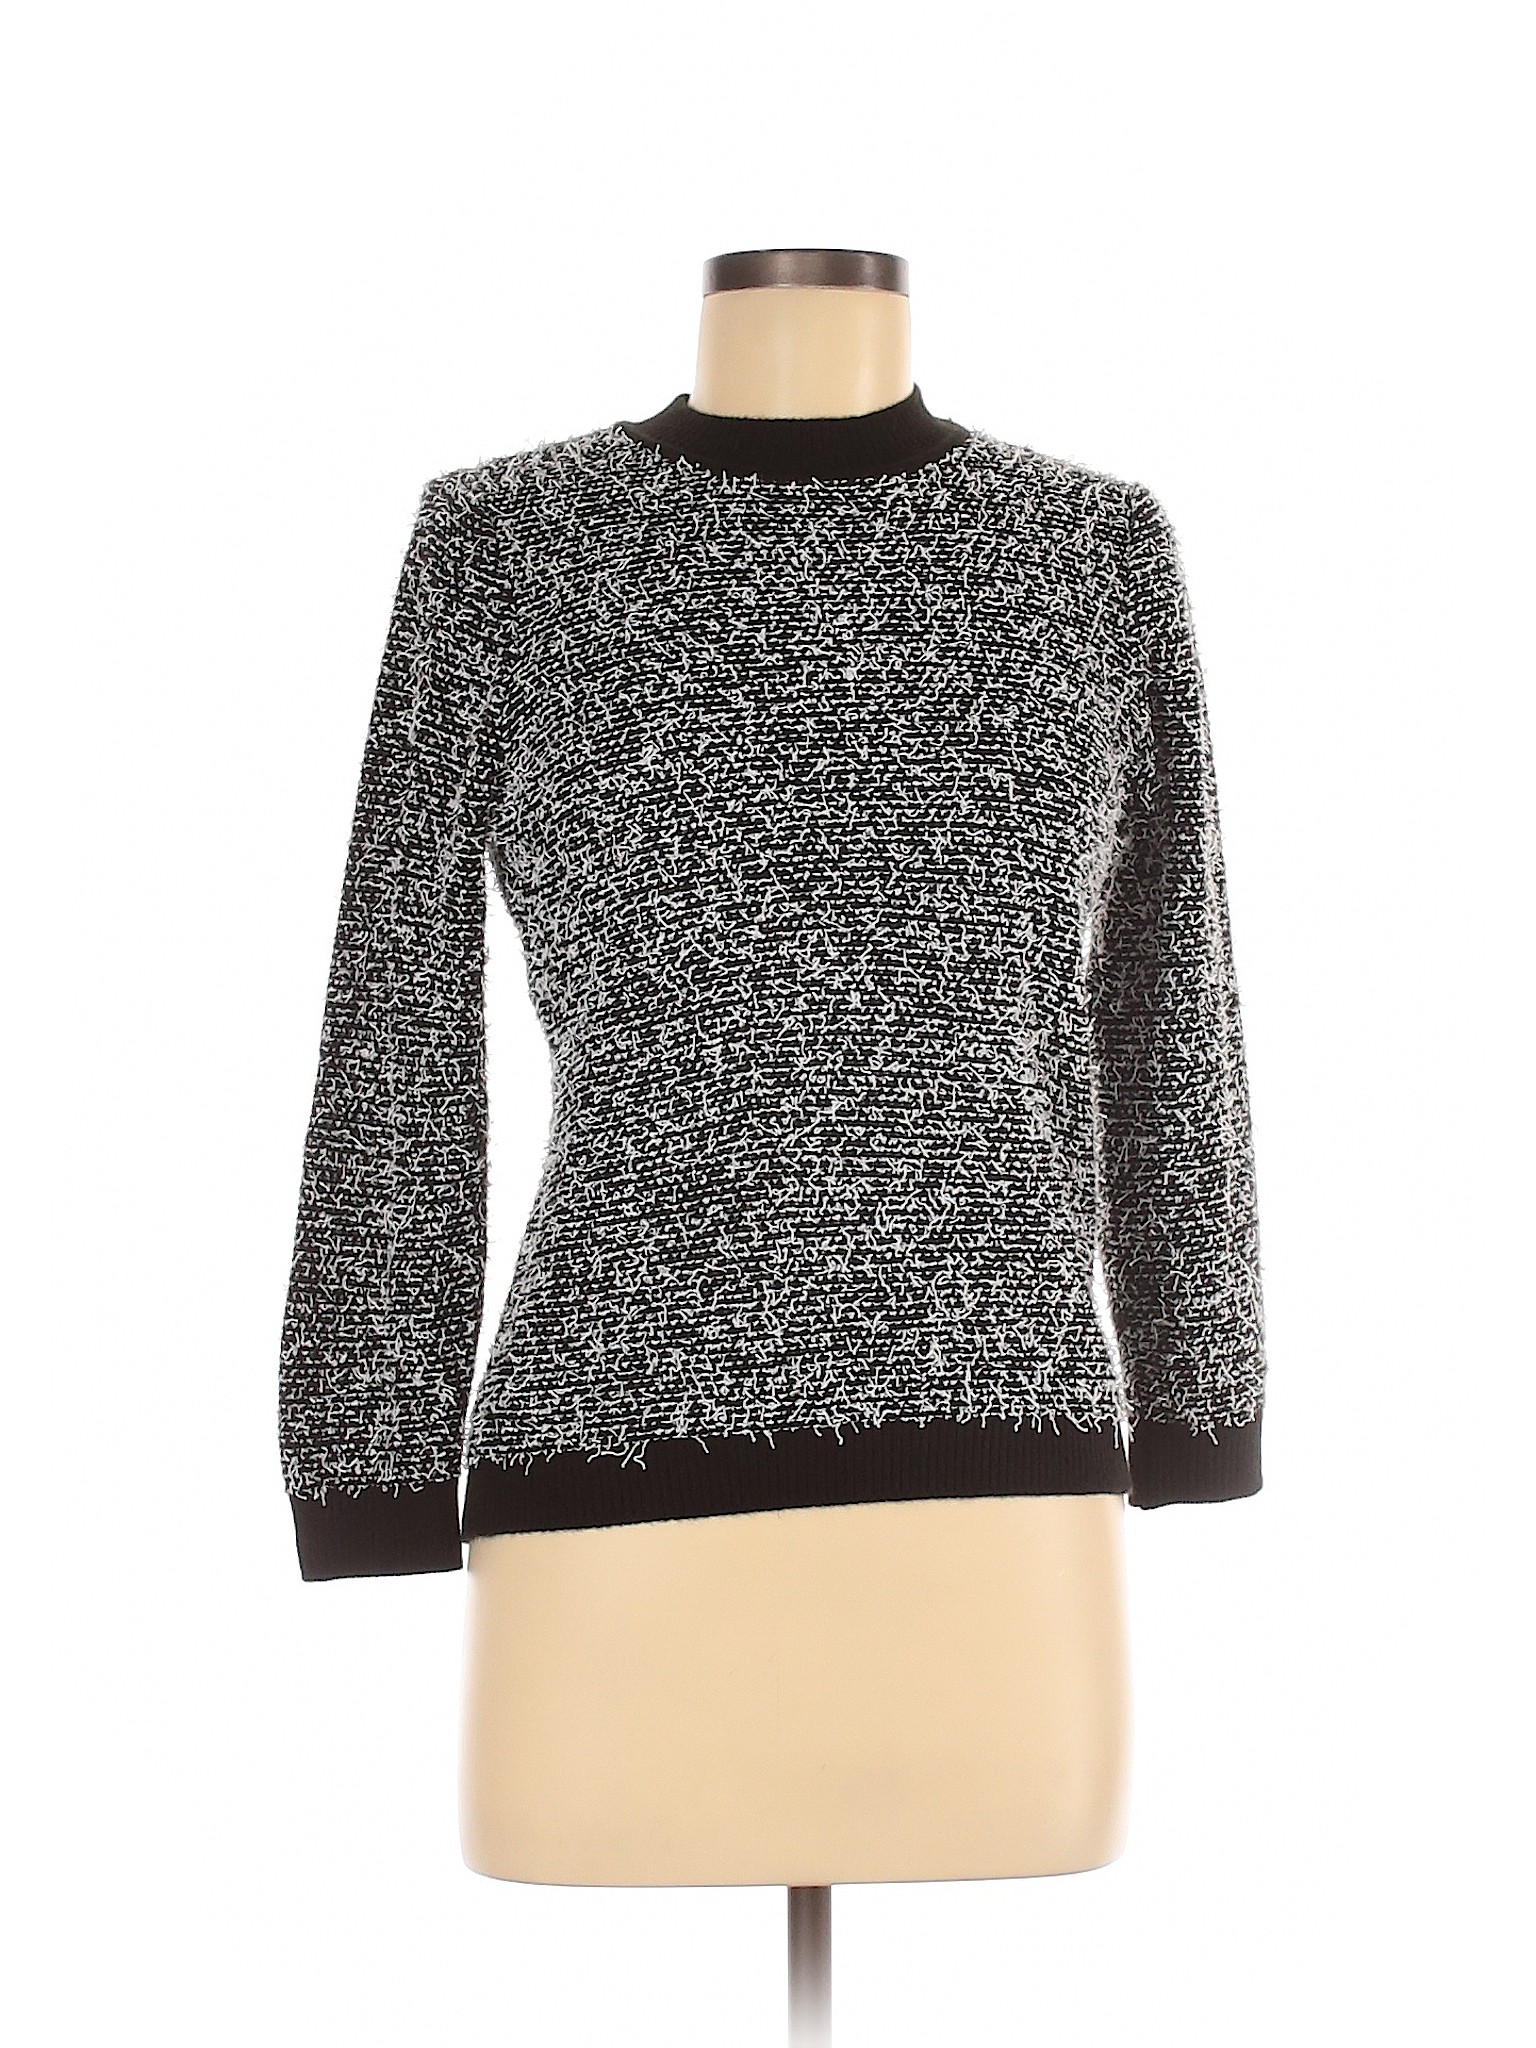 Calvin Klein Women Black Pullover Sweater M | eBay